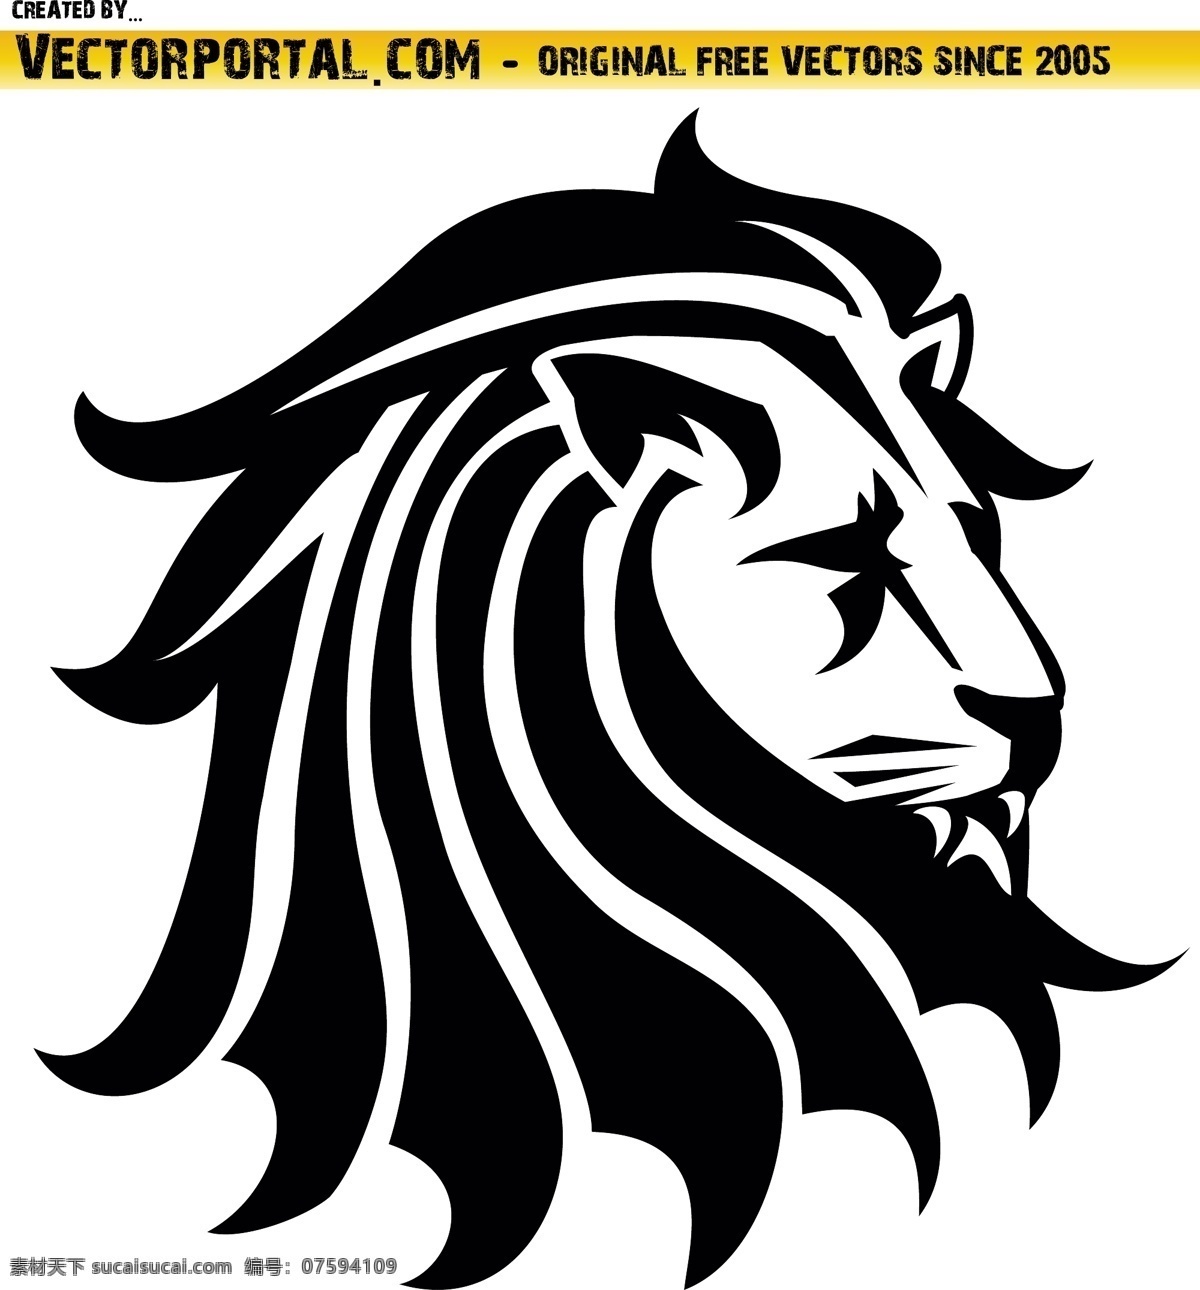 狮子头像 卡通 漫画 插画 狮子 头像 手绘 剪影 黑白 狮子王 狮王 图标 标志 logo 卡通动物 野生动物 生物世界 矢量